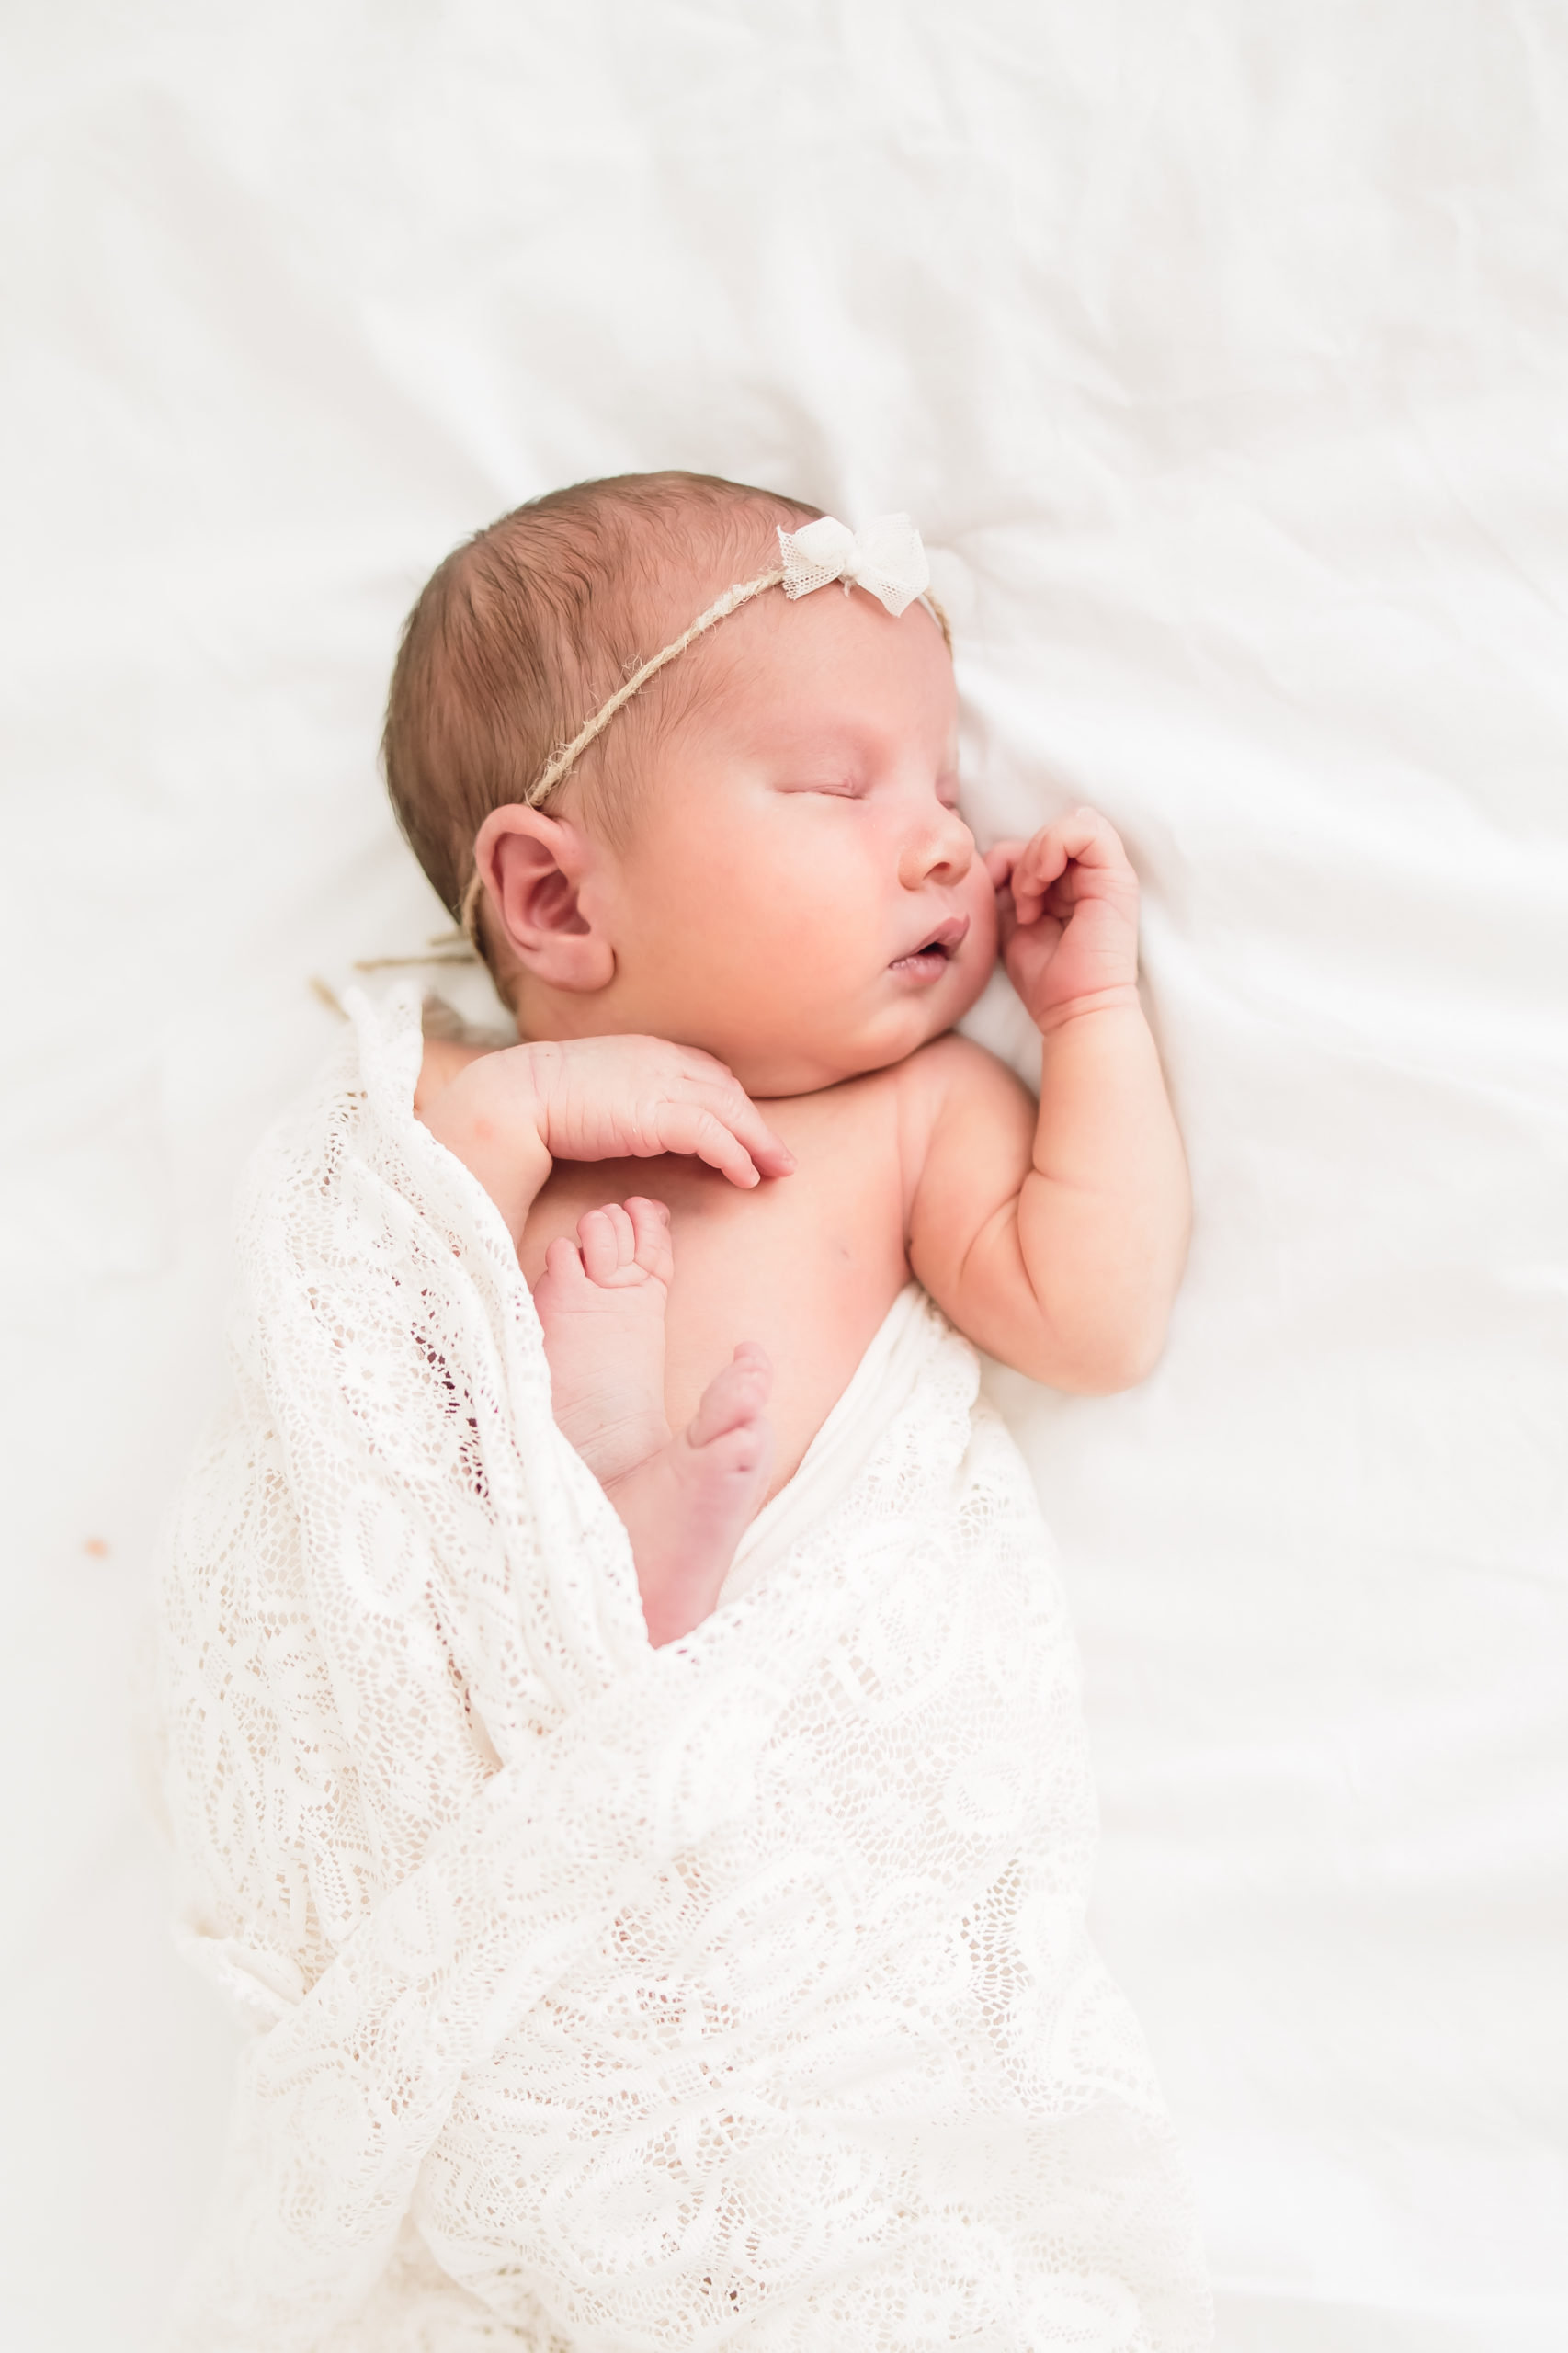 Newborn baby sleeping in a bright white studio taken by a newborn photographer in Louisville